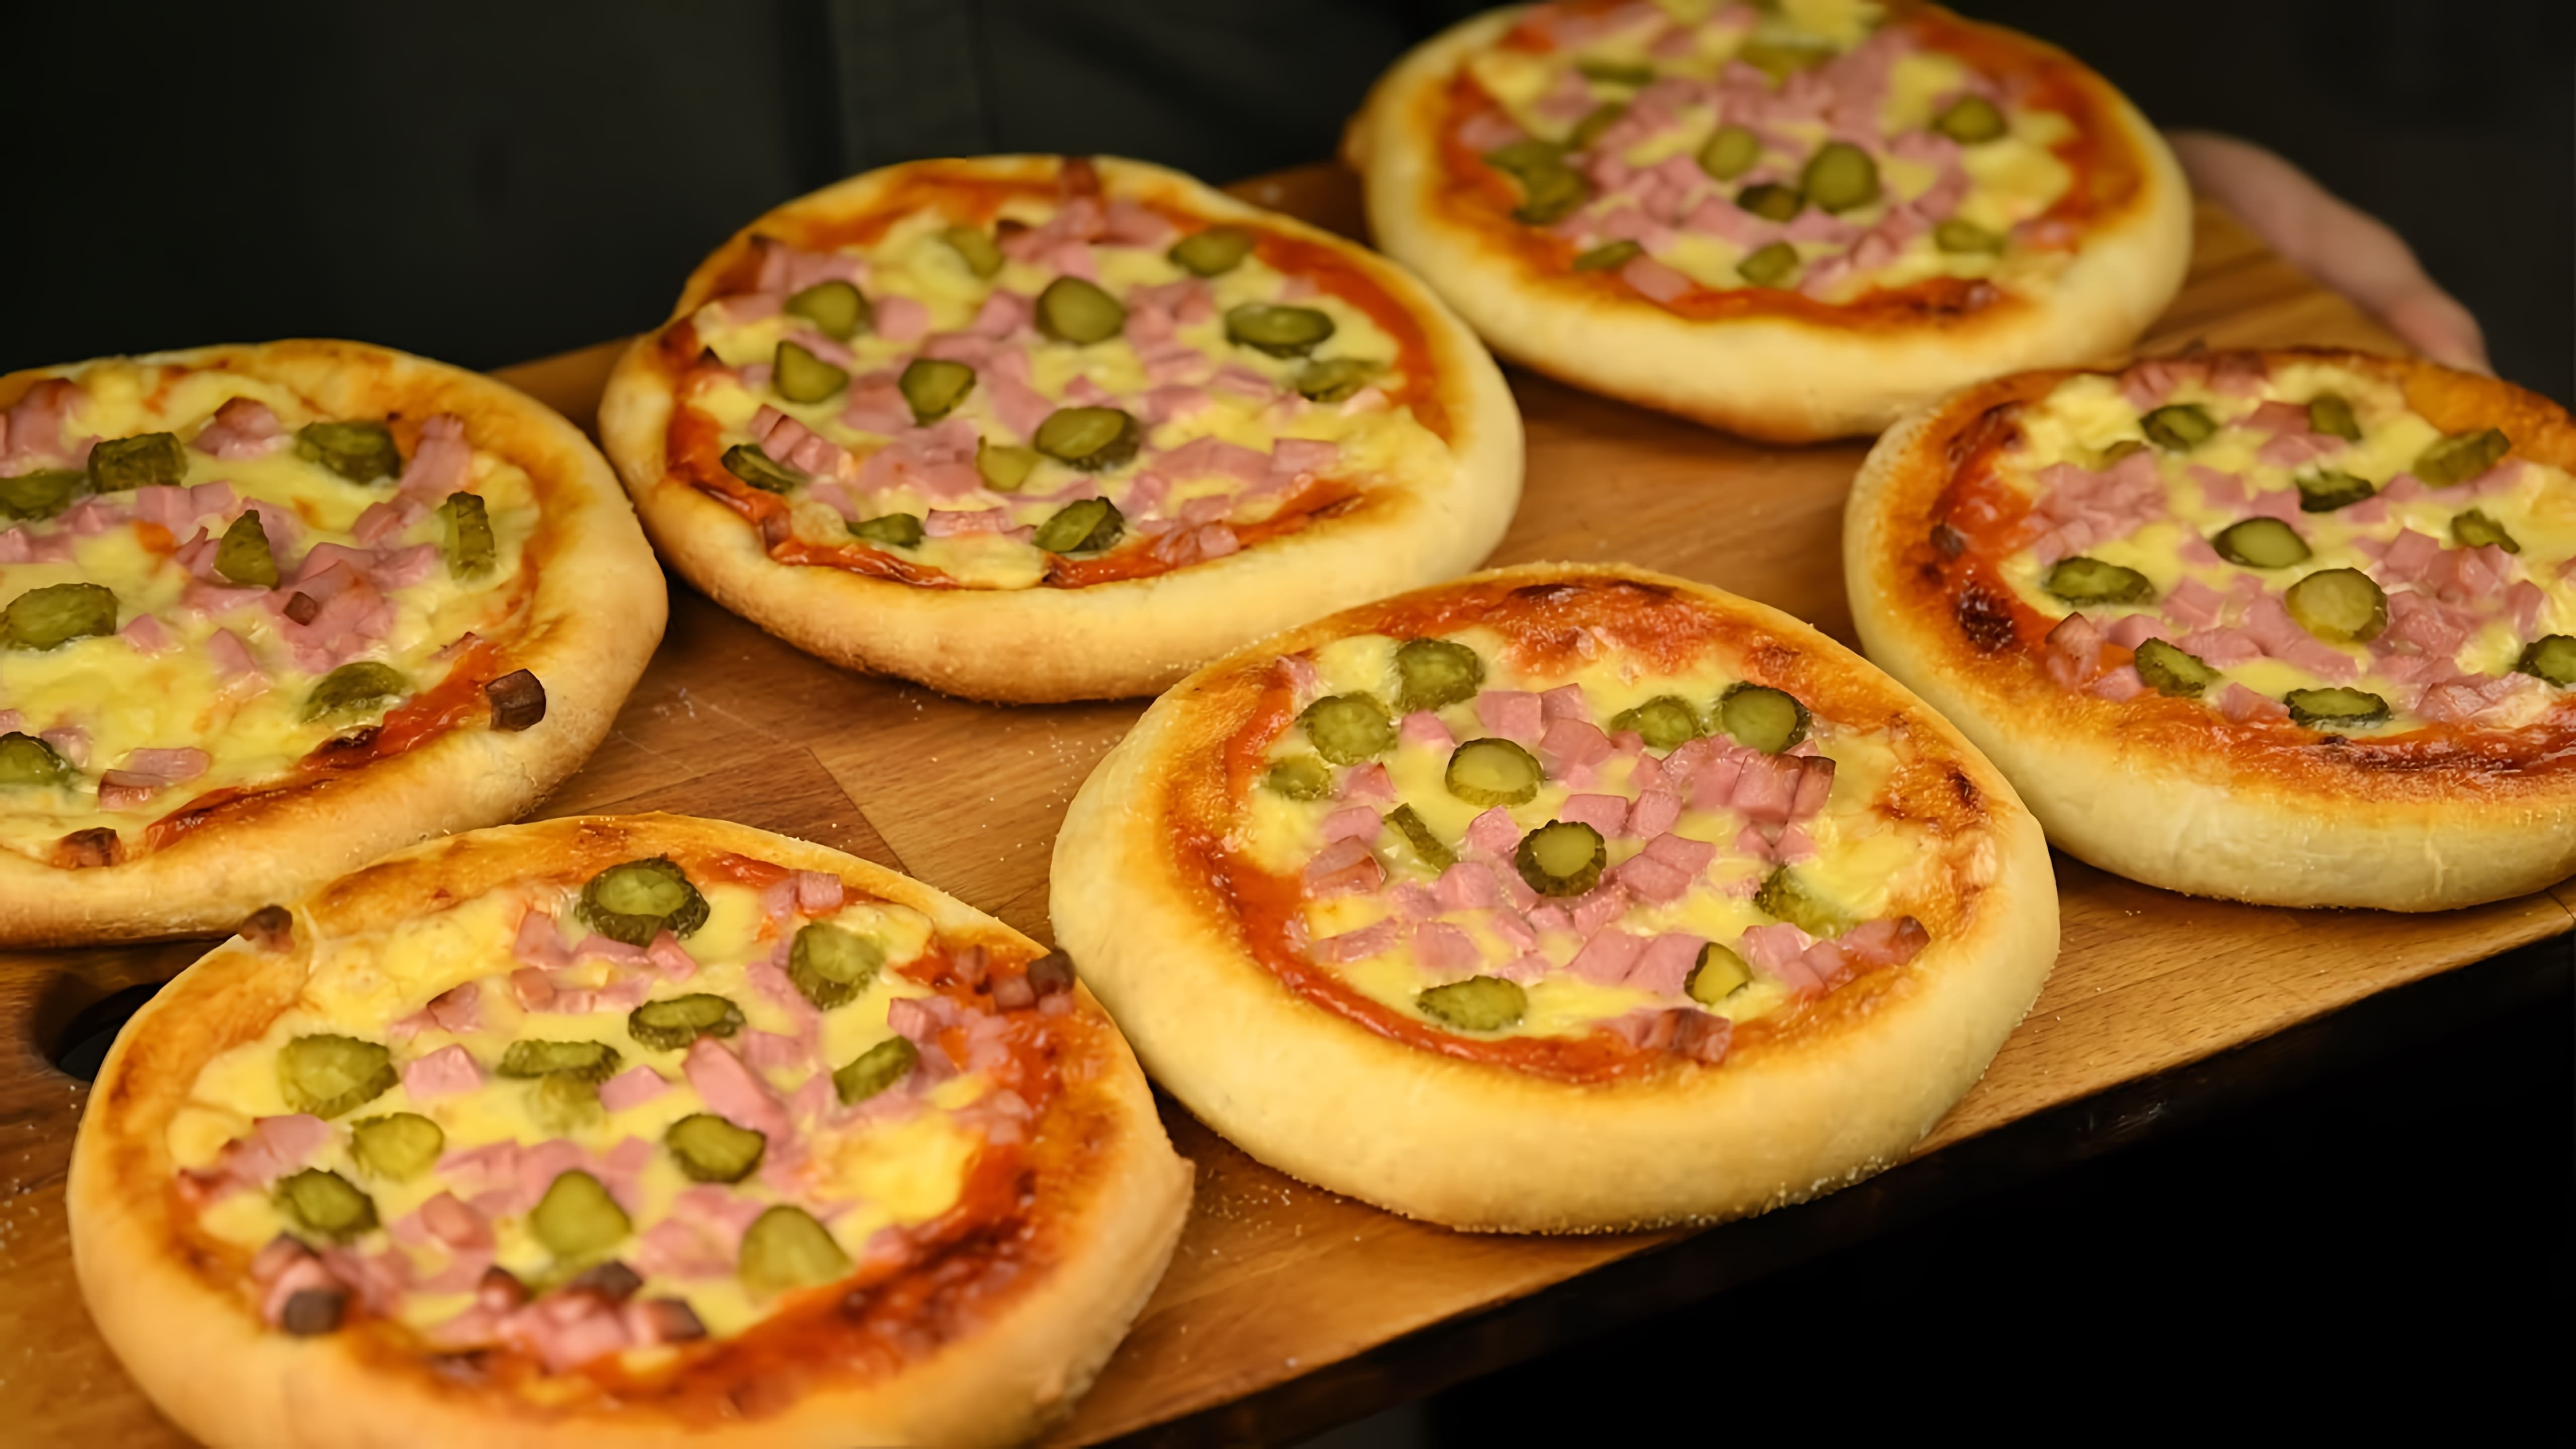 В этом видео демонстрируется процесс приготовления мини-пиццы, которая продавалась в школьных столовых